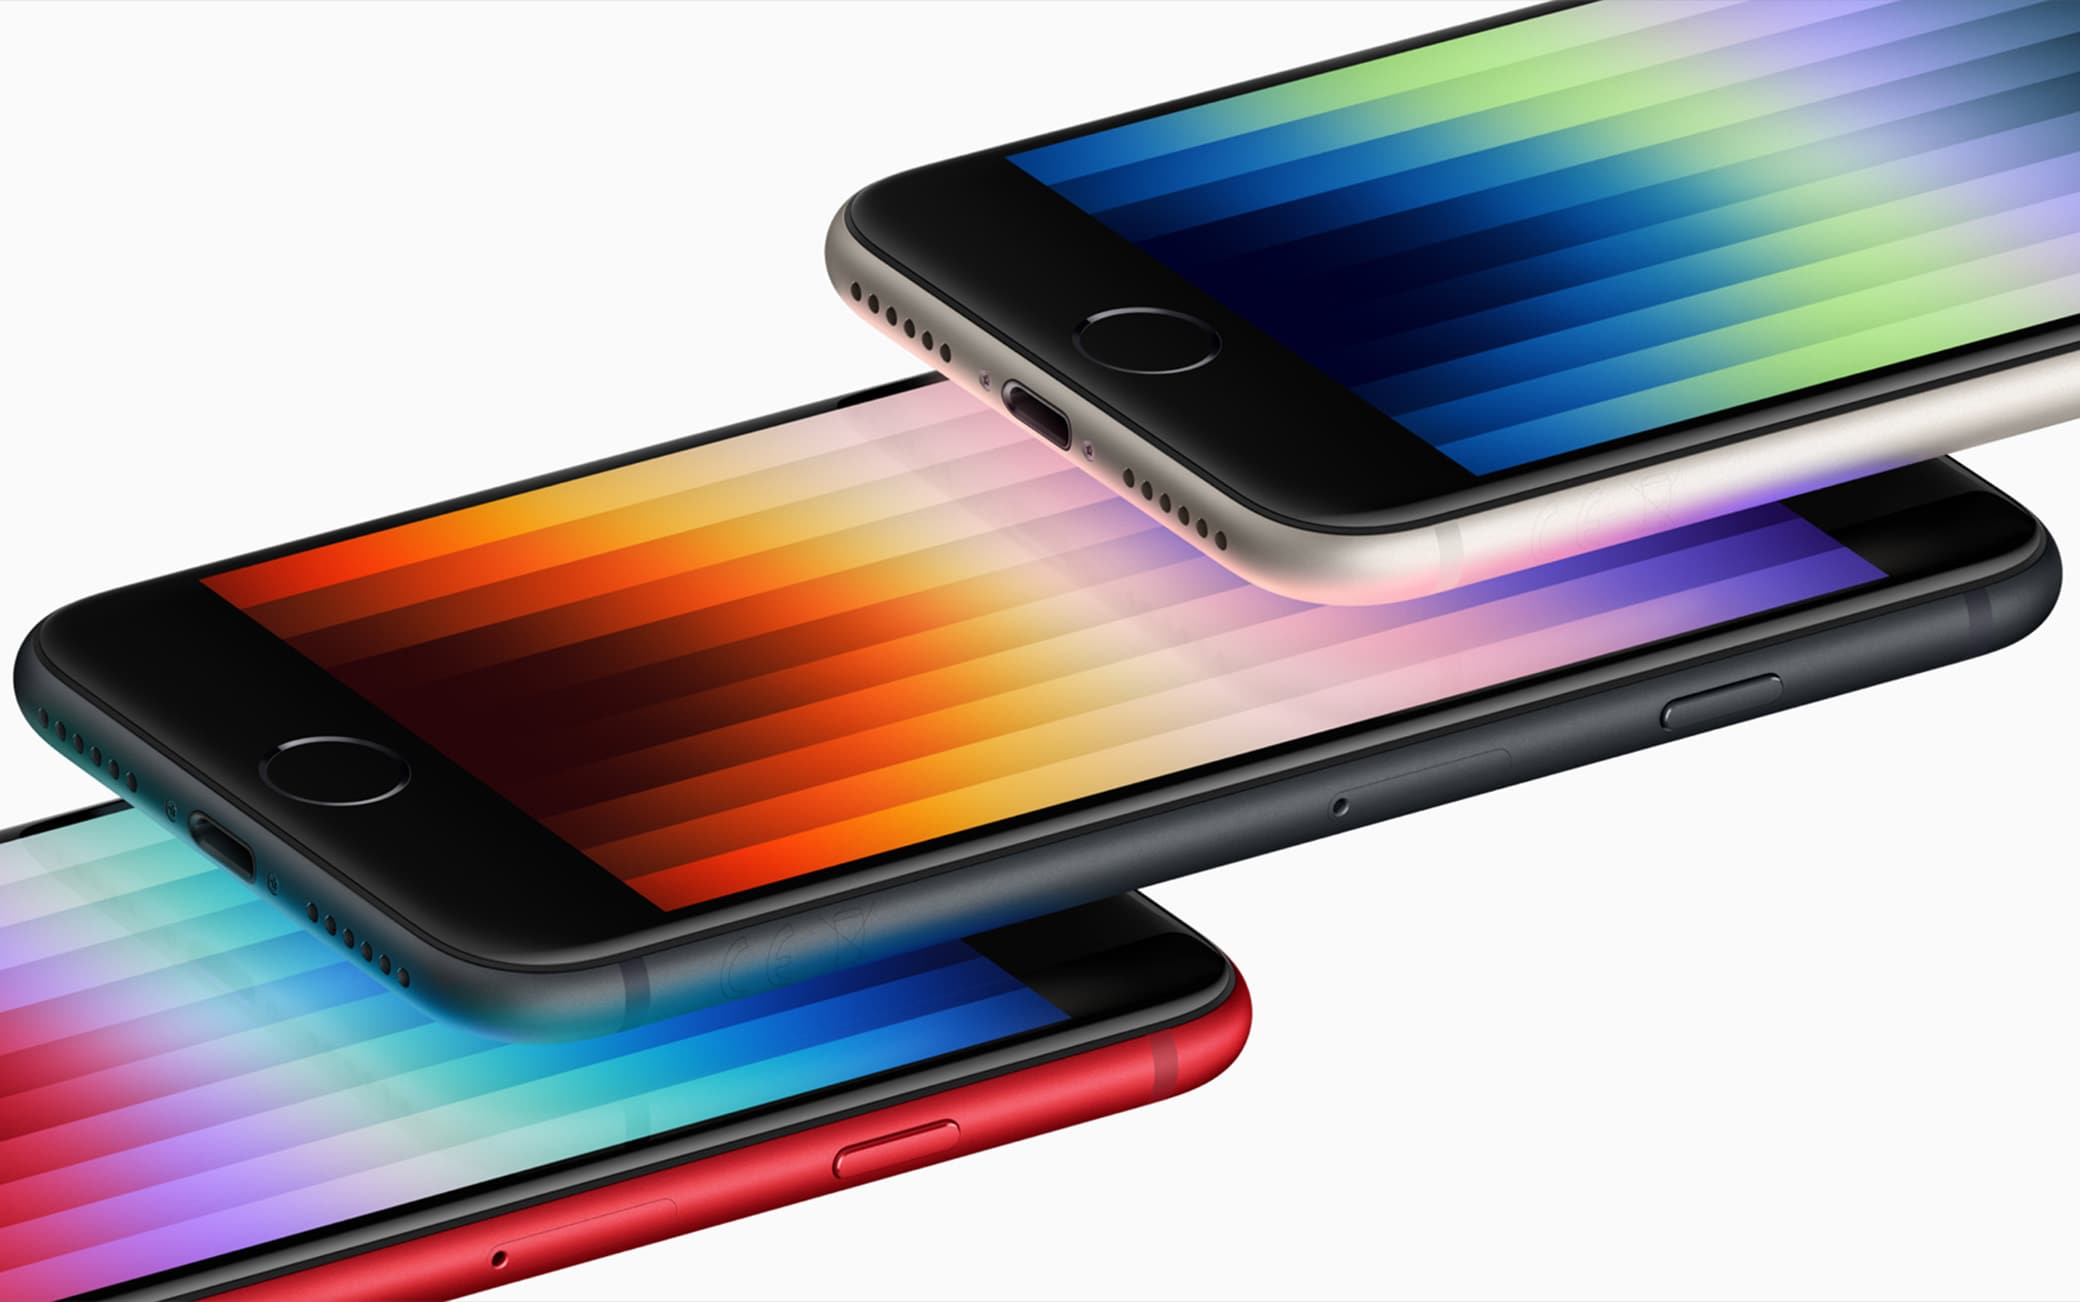 O novo iPhone SE é vendido em três cores